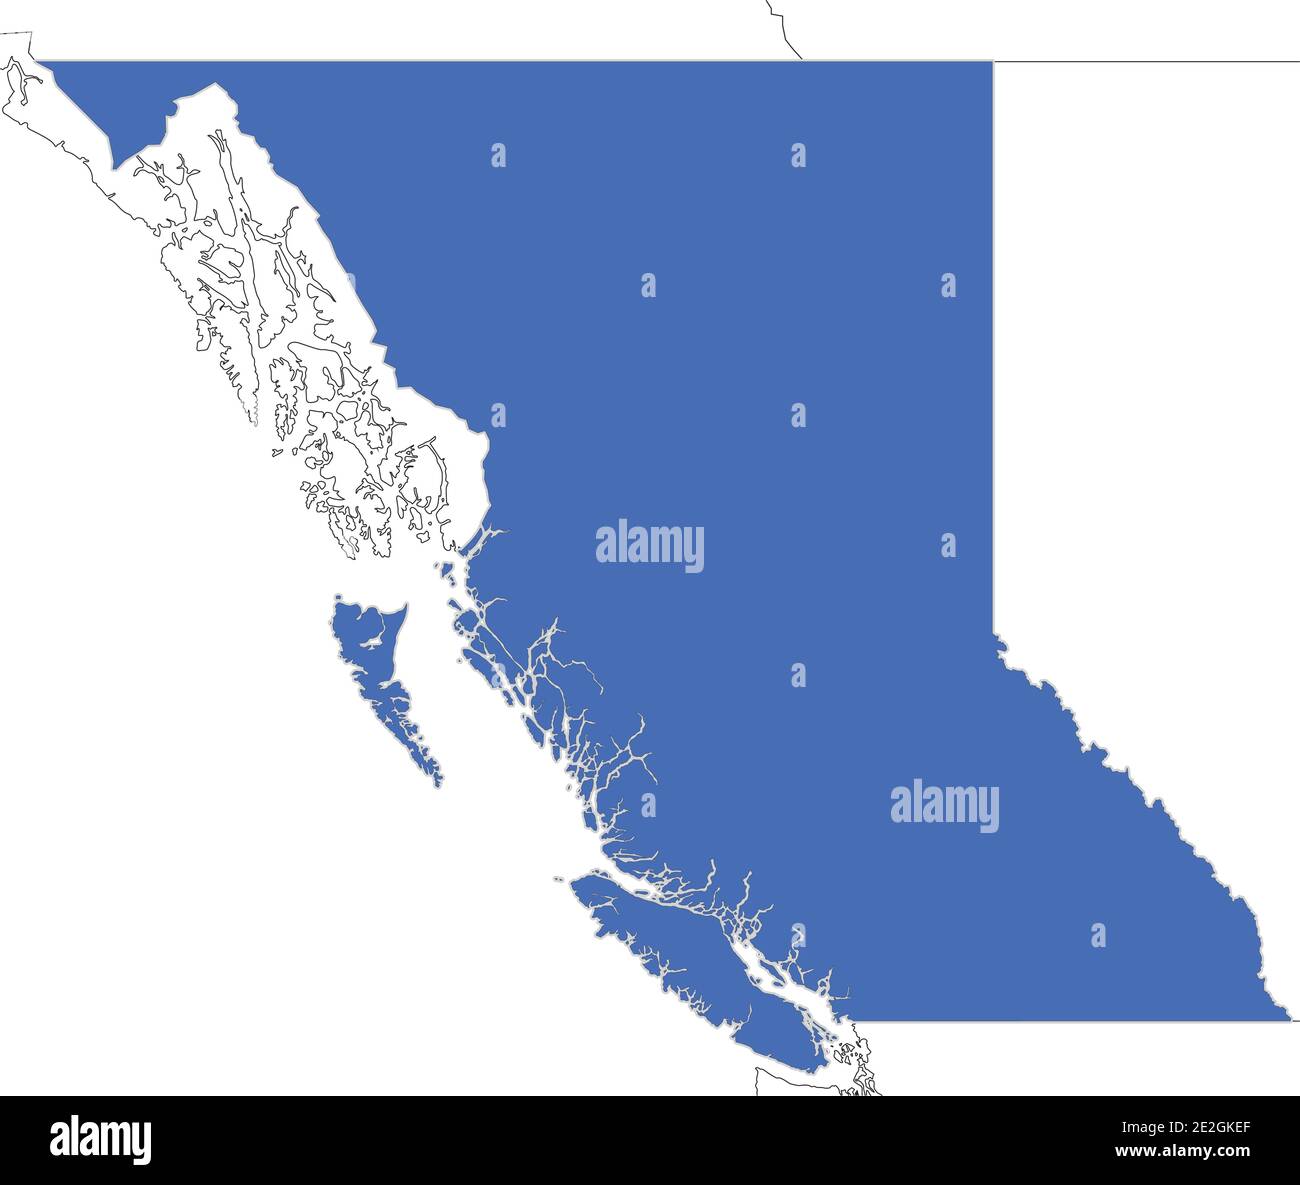 Semplice mappa della Columbia Britannica, provincia del Canada con contorni di regioni vicine come Yukon, territori del Nord-Ovest e Alberta. Illustrazione Vettoriale